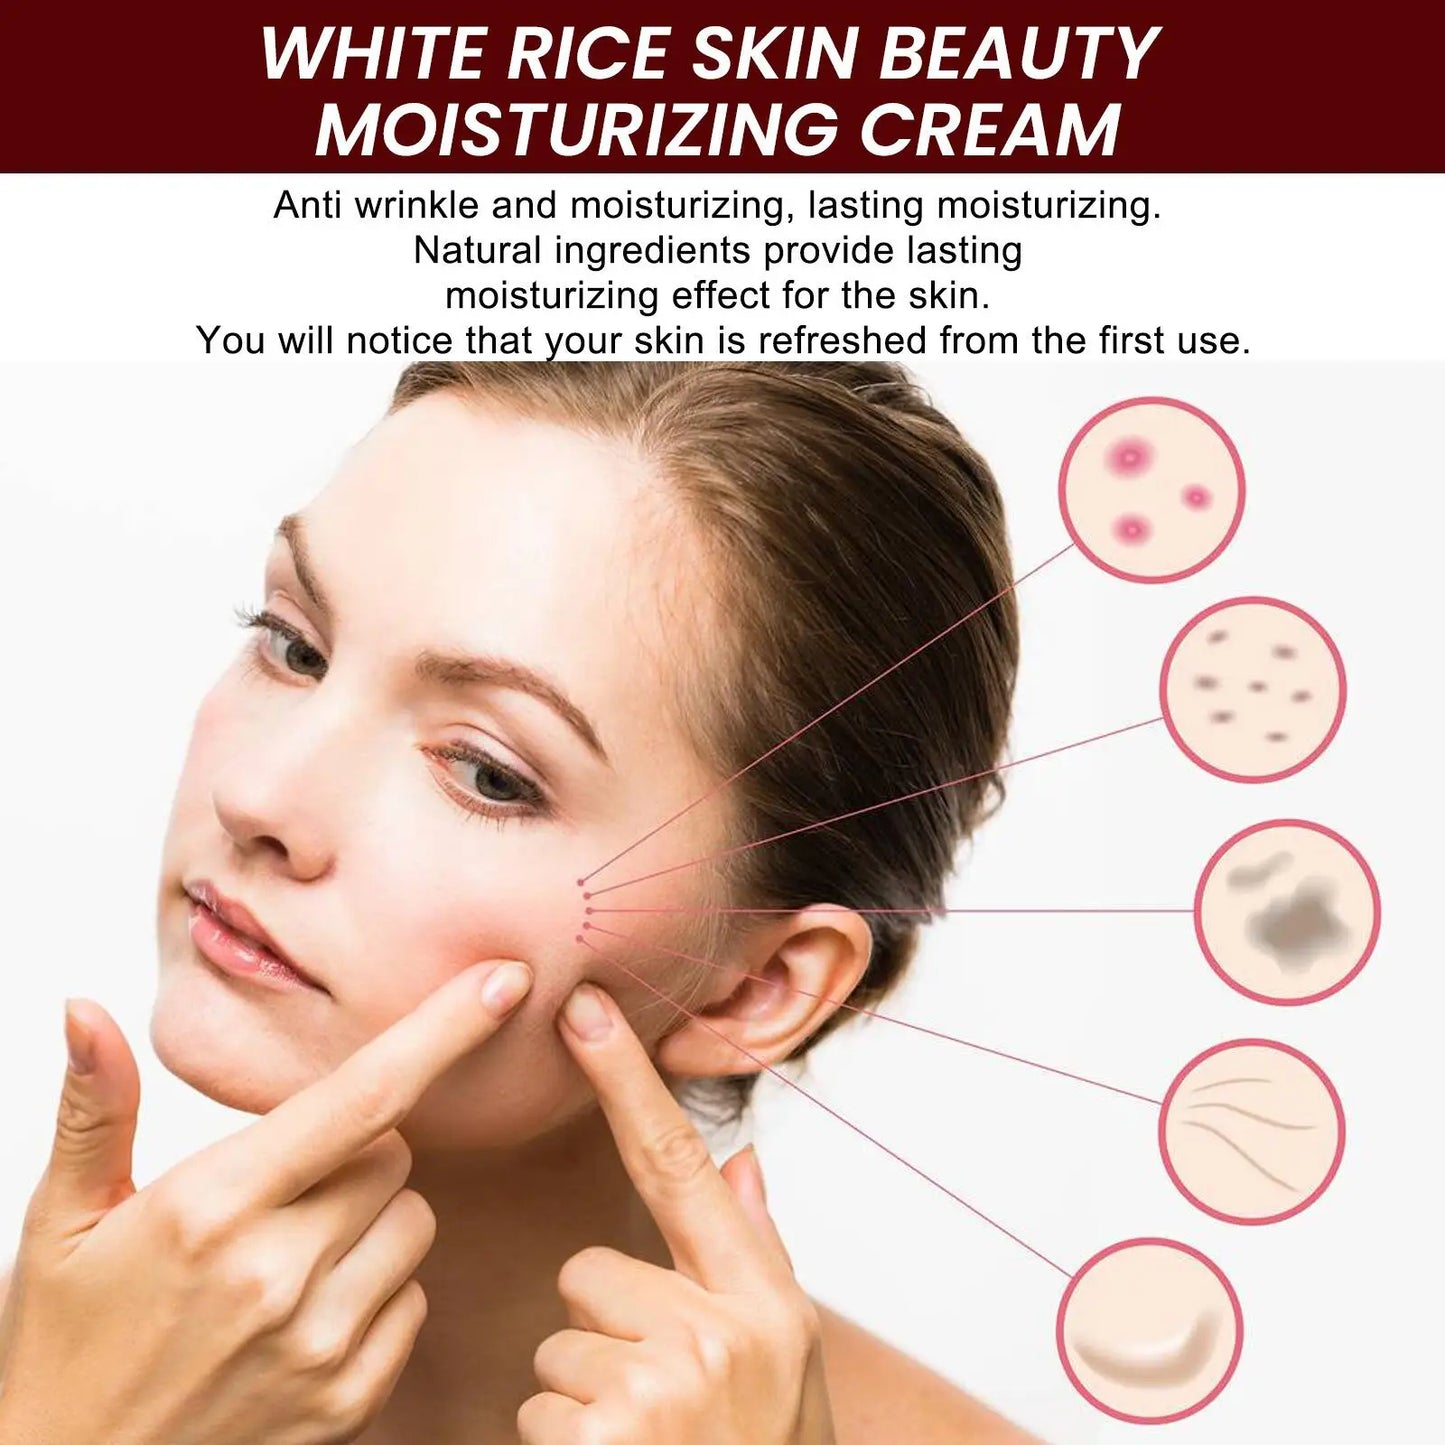 White Rice Whitening Face Cream: Removes Dark Spots, Anti-Wrinkle